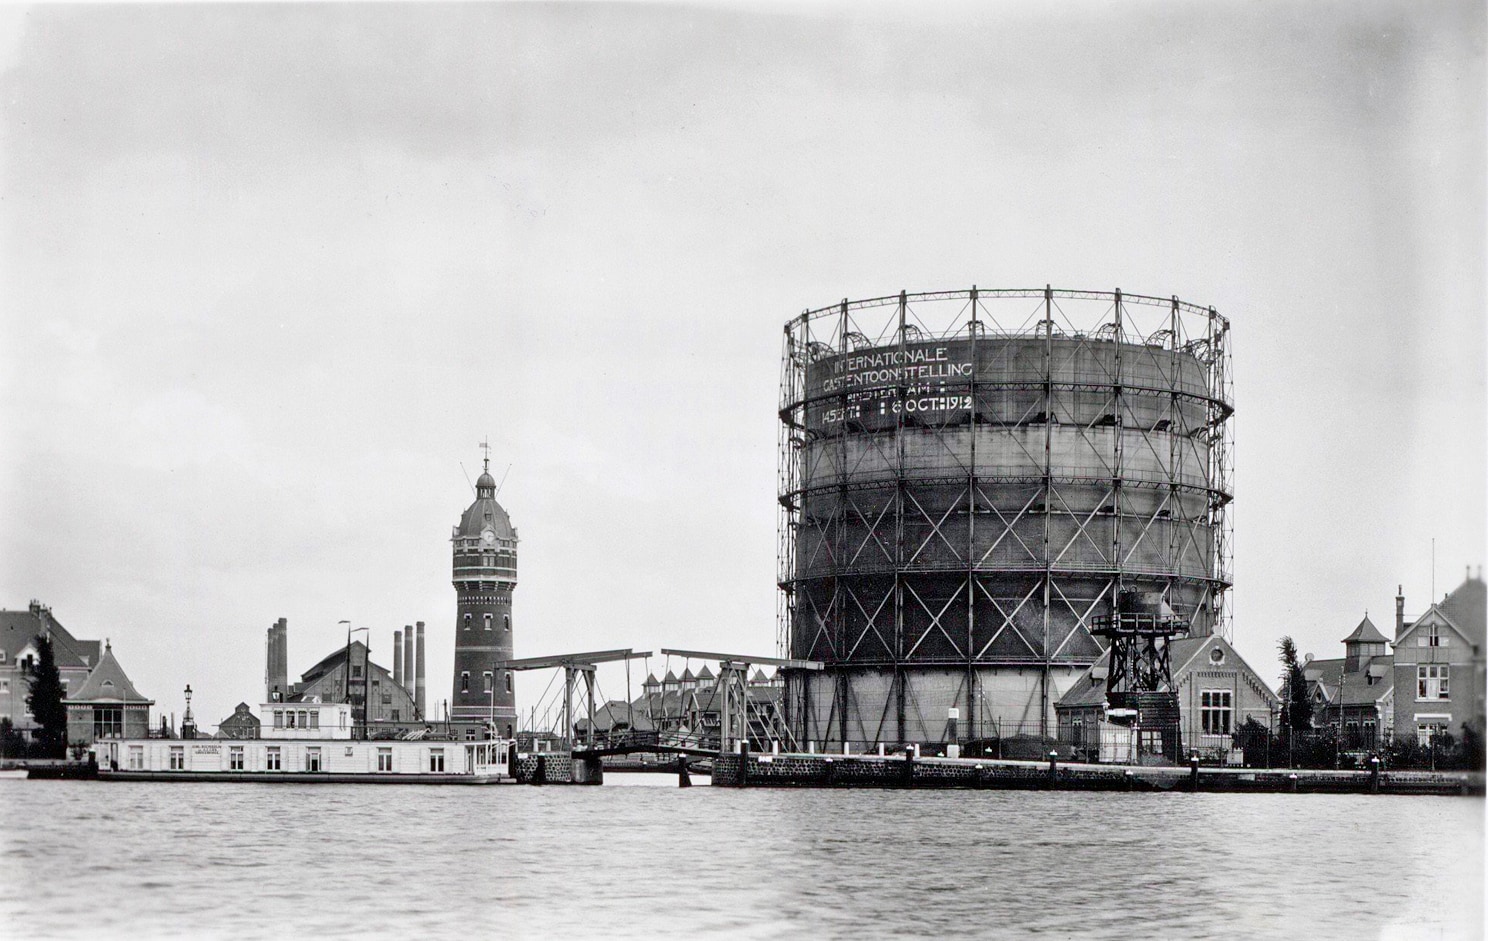 De Zuidergasfabriek in 1912 en 2019